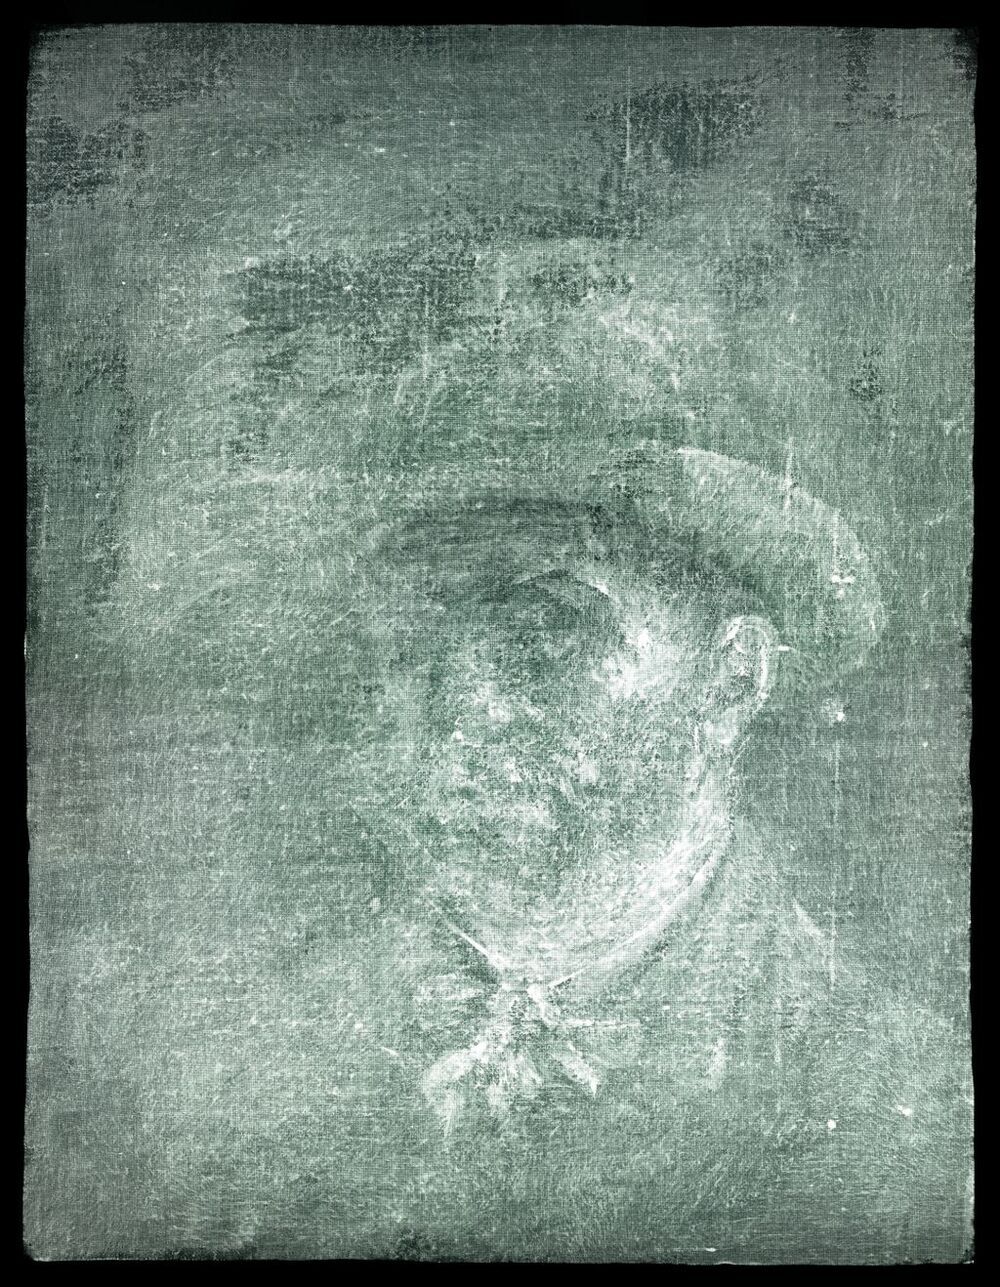 Descubren un autorretrato de Van Gogh en el dorso de un lienzo